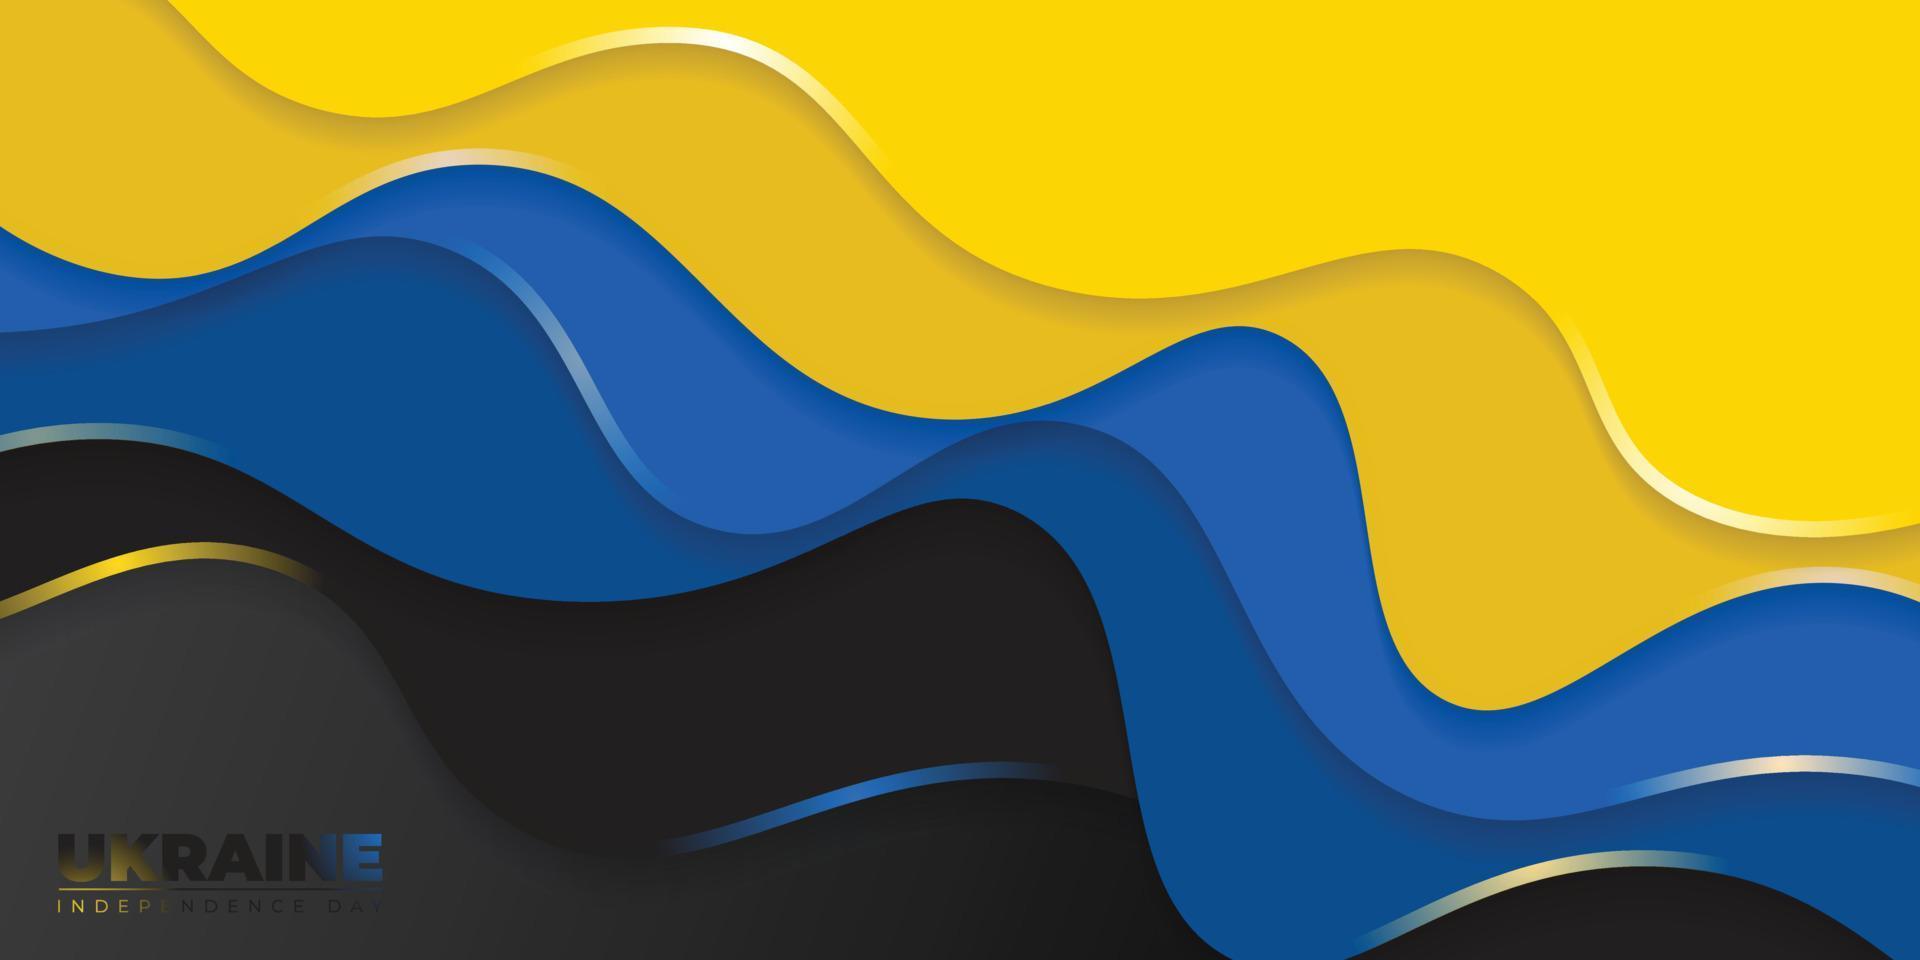 blauer und gelber abstrakter hintergrund für das design des ukrainischen unabhängigkeitstages. vektor